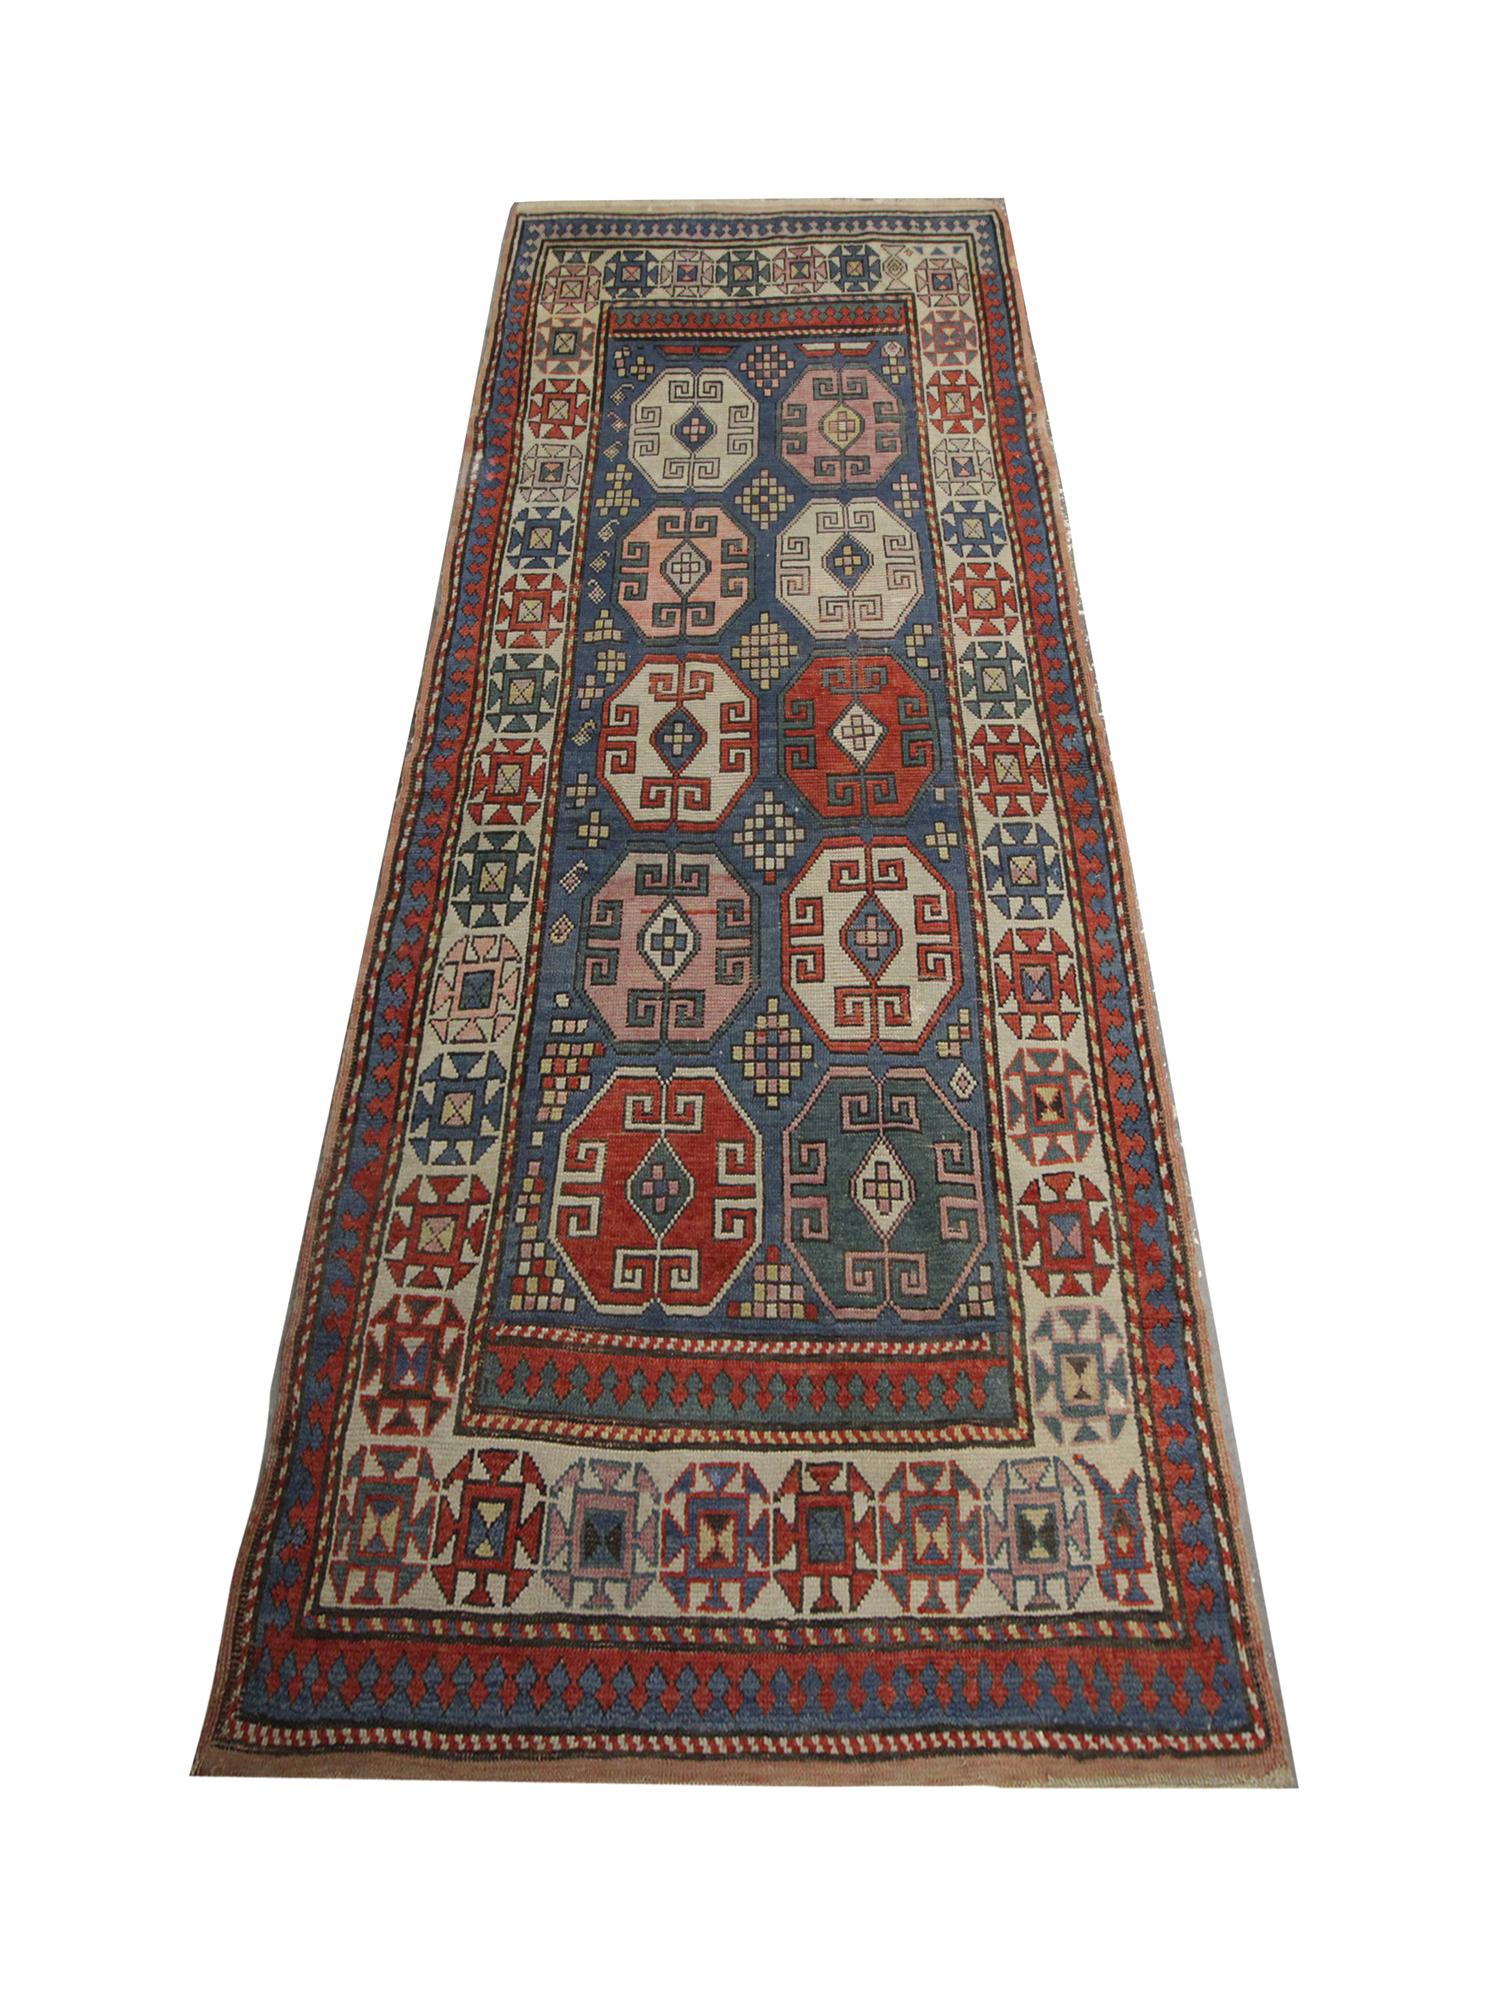 Ce tapis ancien du Caucase, tapis d'Azerbaïdjan, présente un design asymétrique. Le centre présente dix emblèmes octogonaux avec des motifs entrelacés sur un fond bleu entouré d'autres détails géométriques. Ce tapis oriental fait main est ensuite